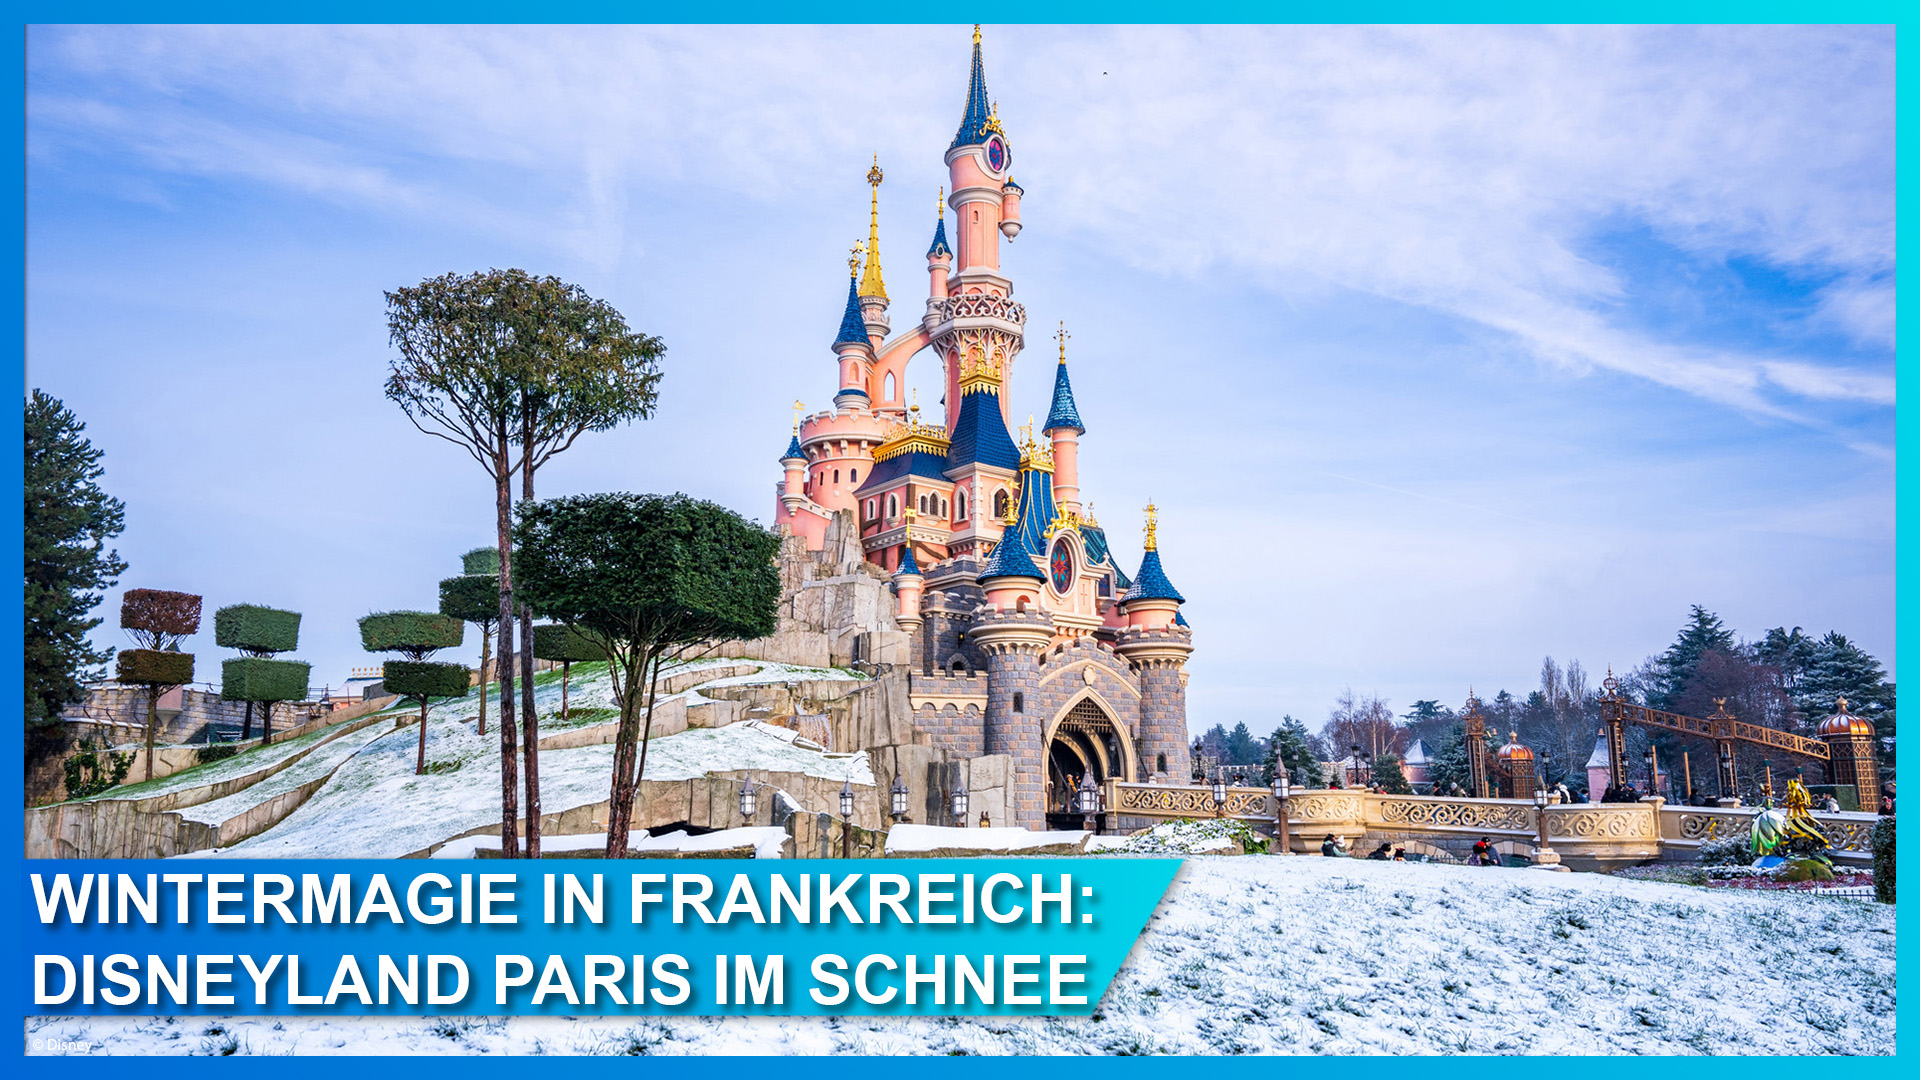 Disneyland Paris im Schnee: Bestaunt die Wintermagie in diesen Bildern.